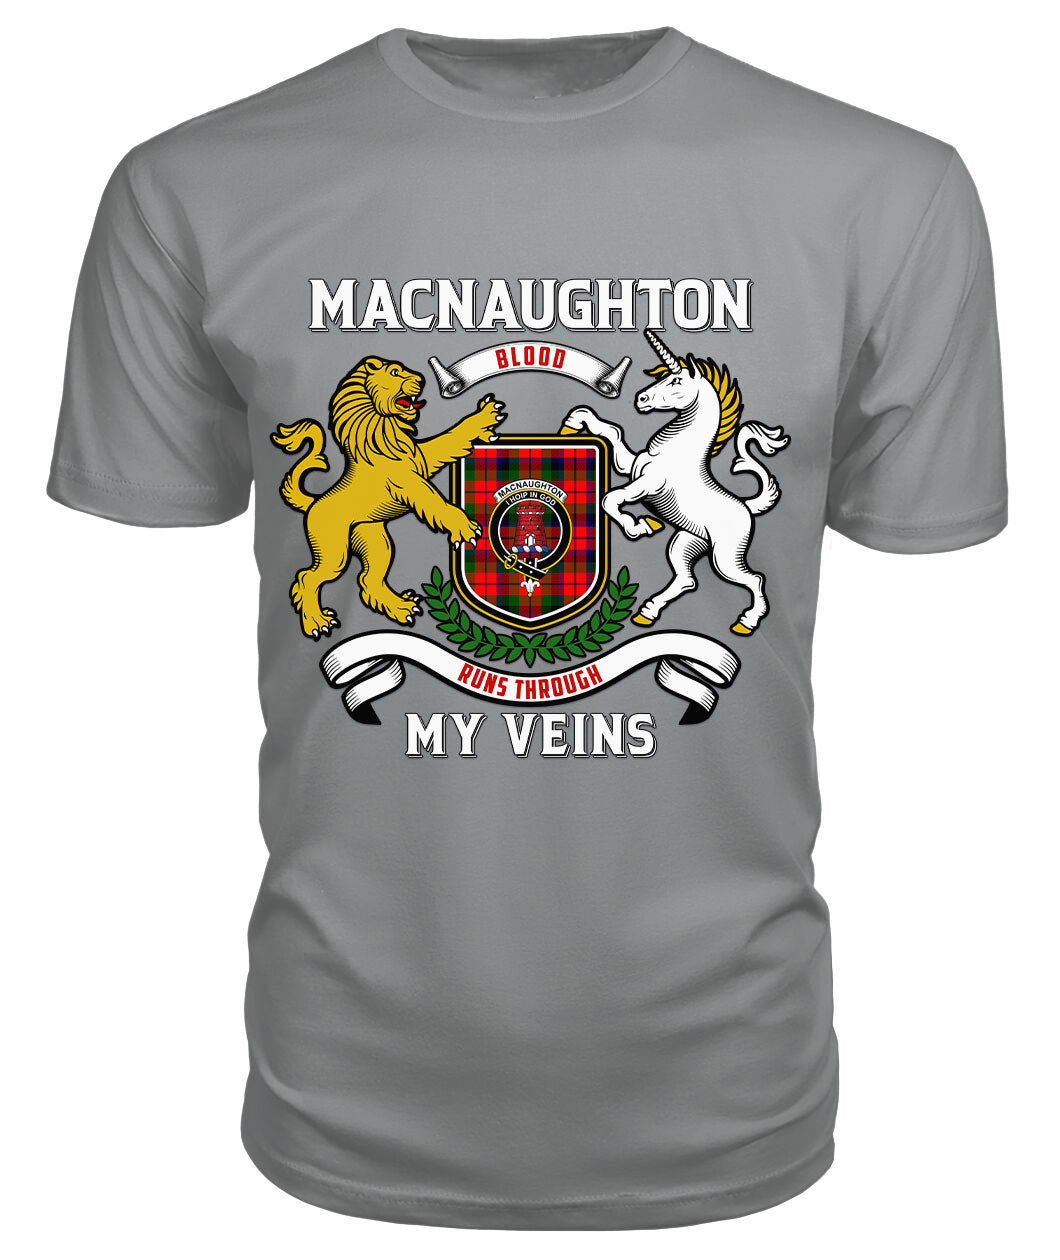 MacNaughton Modern Tartan Crest 2D T-shirt - Blood Runs Through My Veins Style